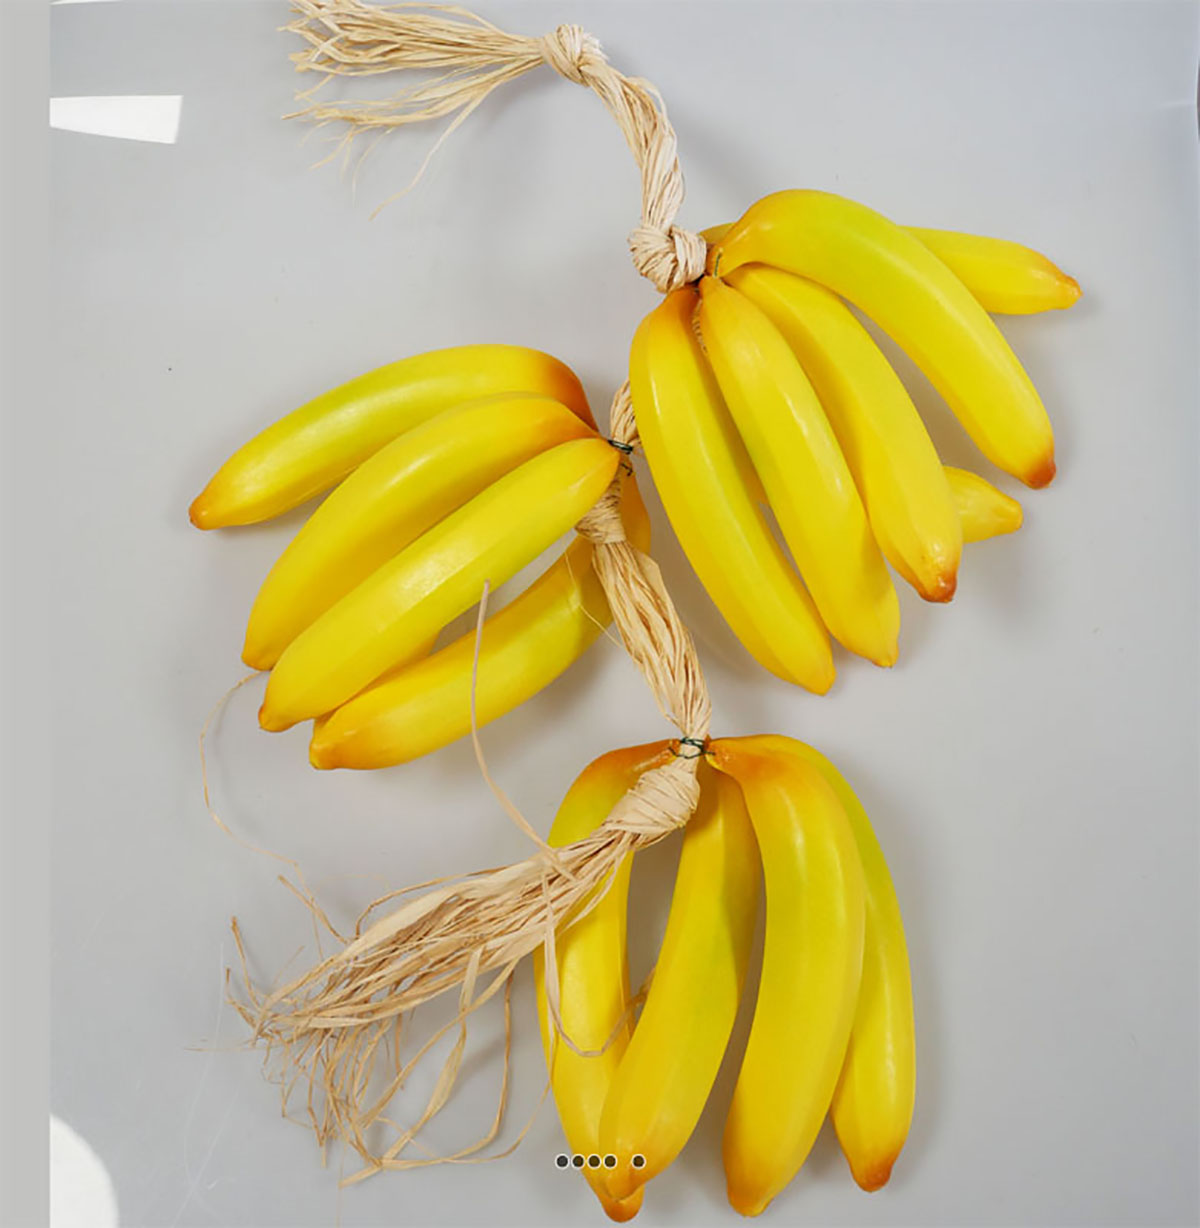 Banane, Vendues individuellement, 0,15 - 0,23 kg